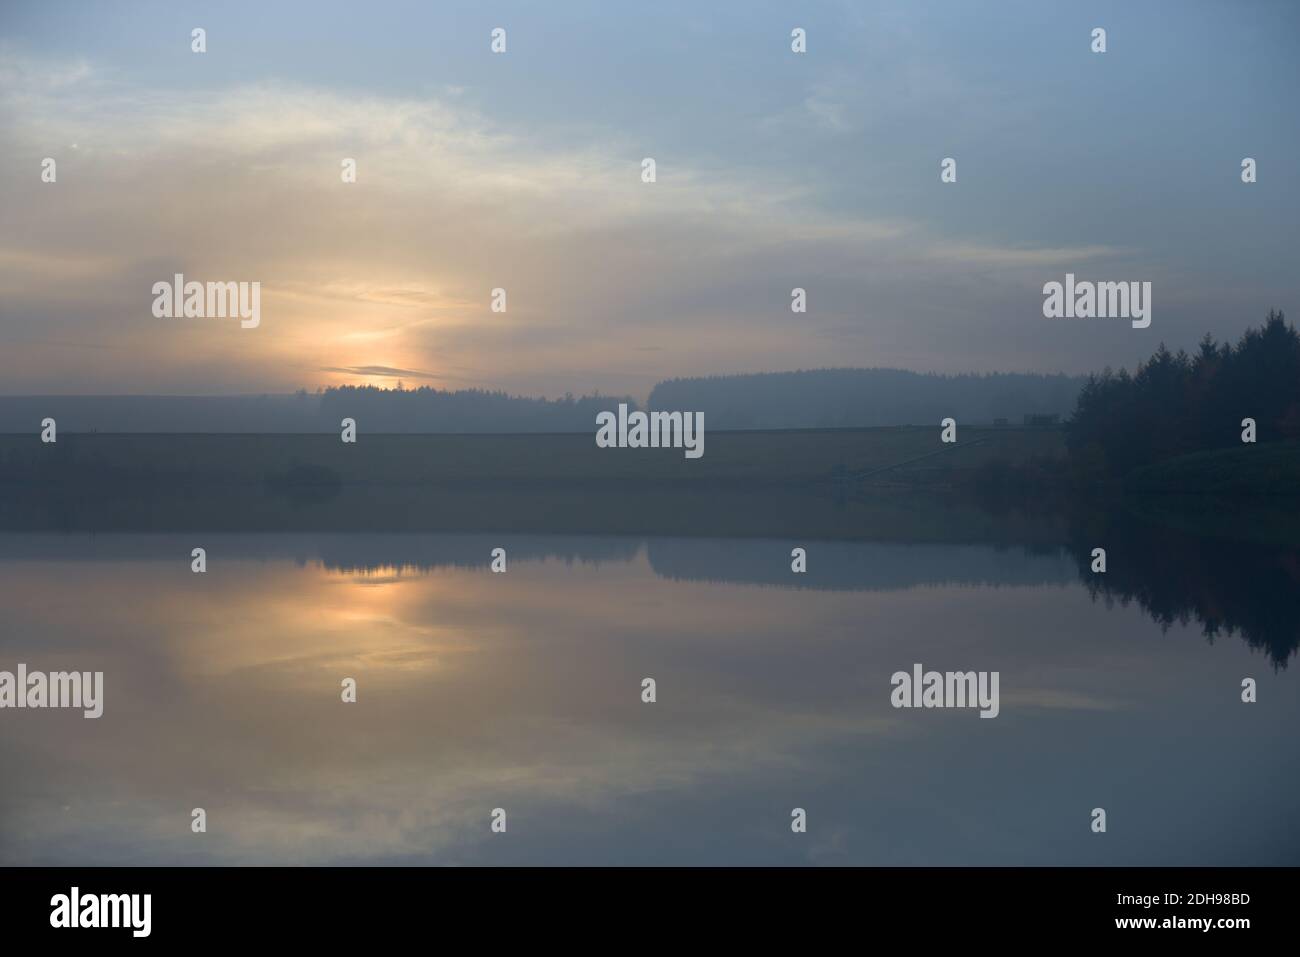 Dammwand wirkt als Symmetrielinie in dieser reflektierten Landschaft. Dunstig Sonnenuntergang über dem ruhigen Wasser der Redmires Reservoirs. Kalter Winter in der Abenddämmerung. Stockfoto